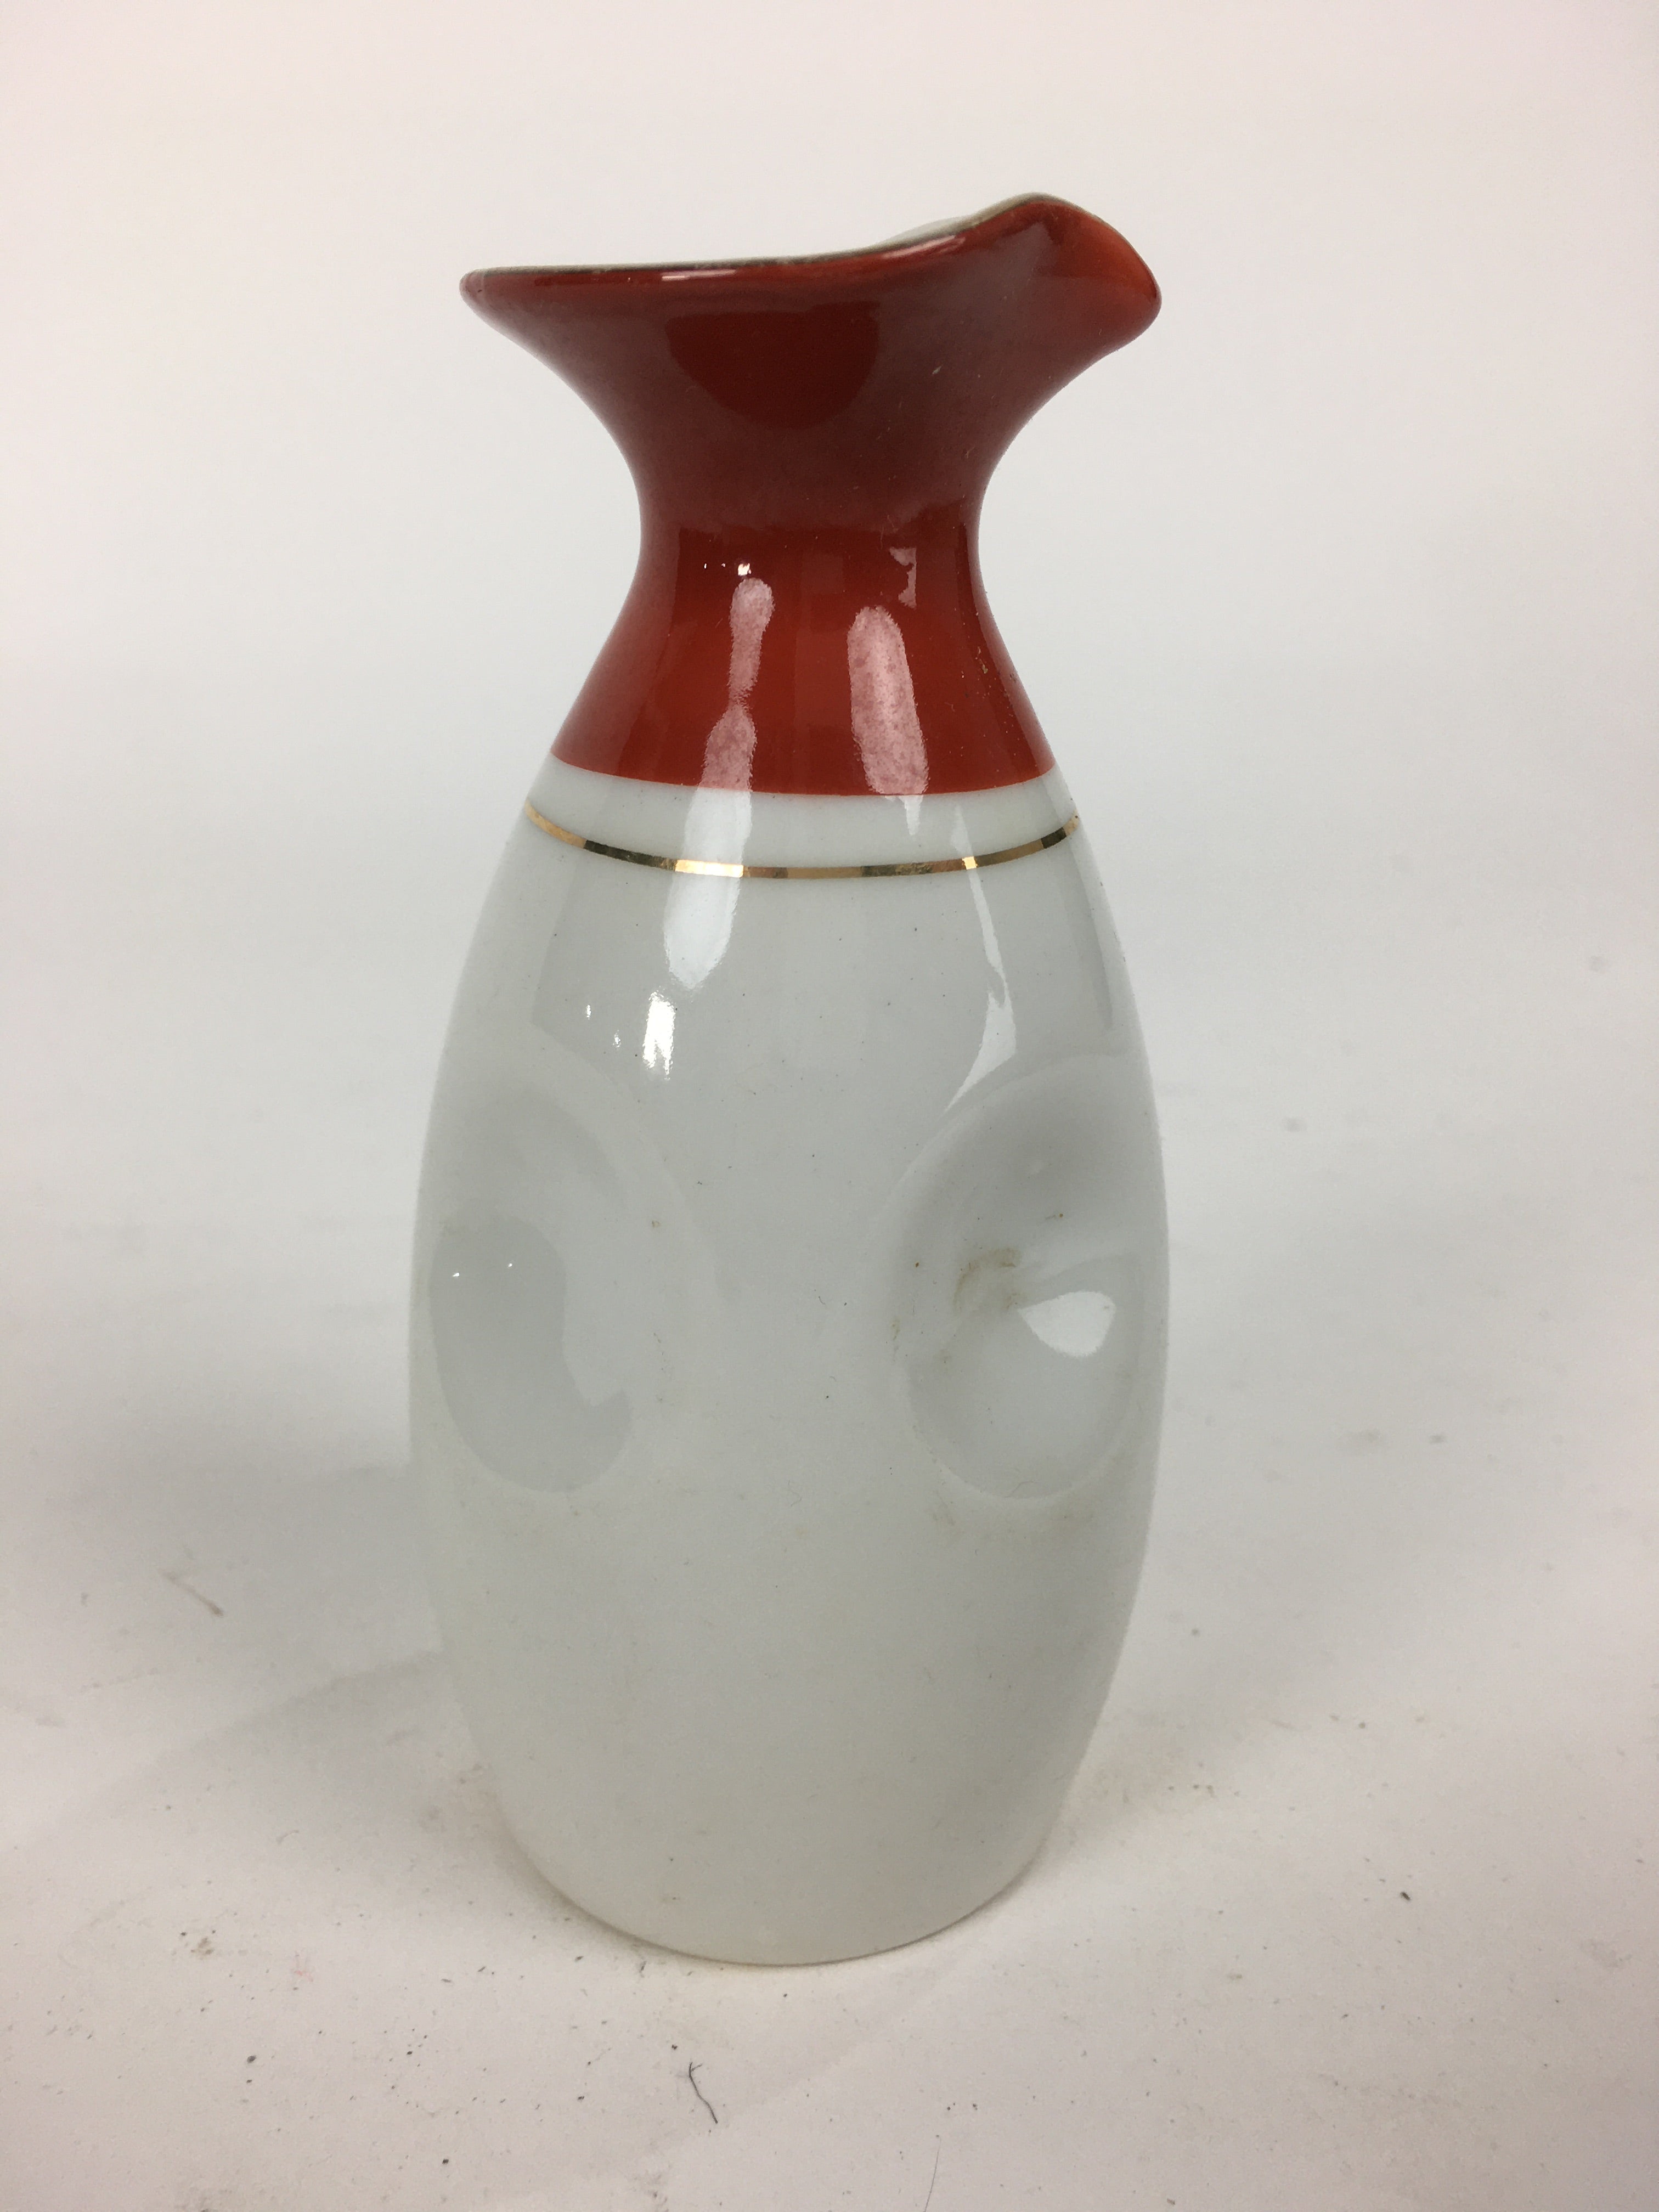 Japanese Porcelain Sake Bottle Vtg Dimple Red Spout White Tokkuri TS330